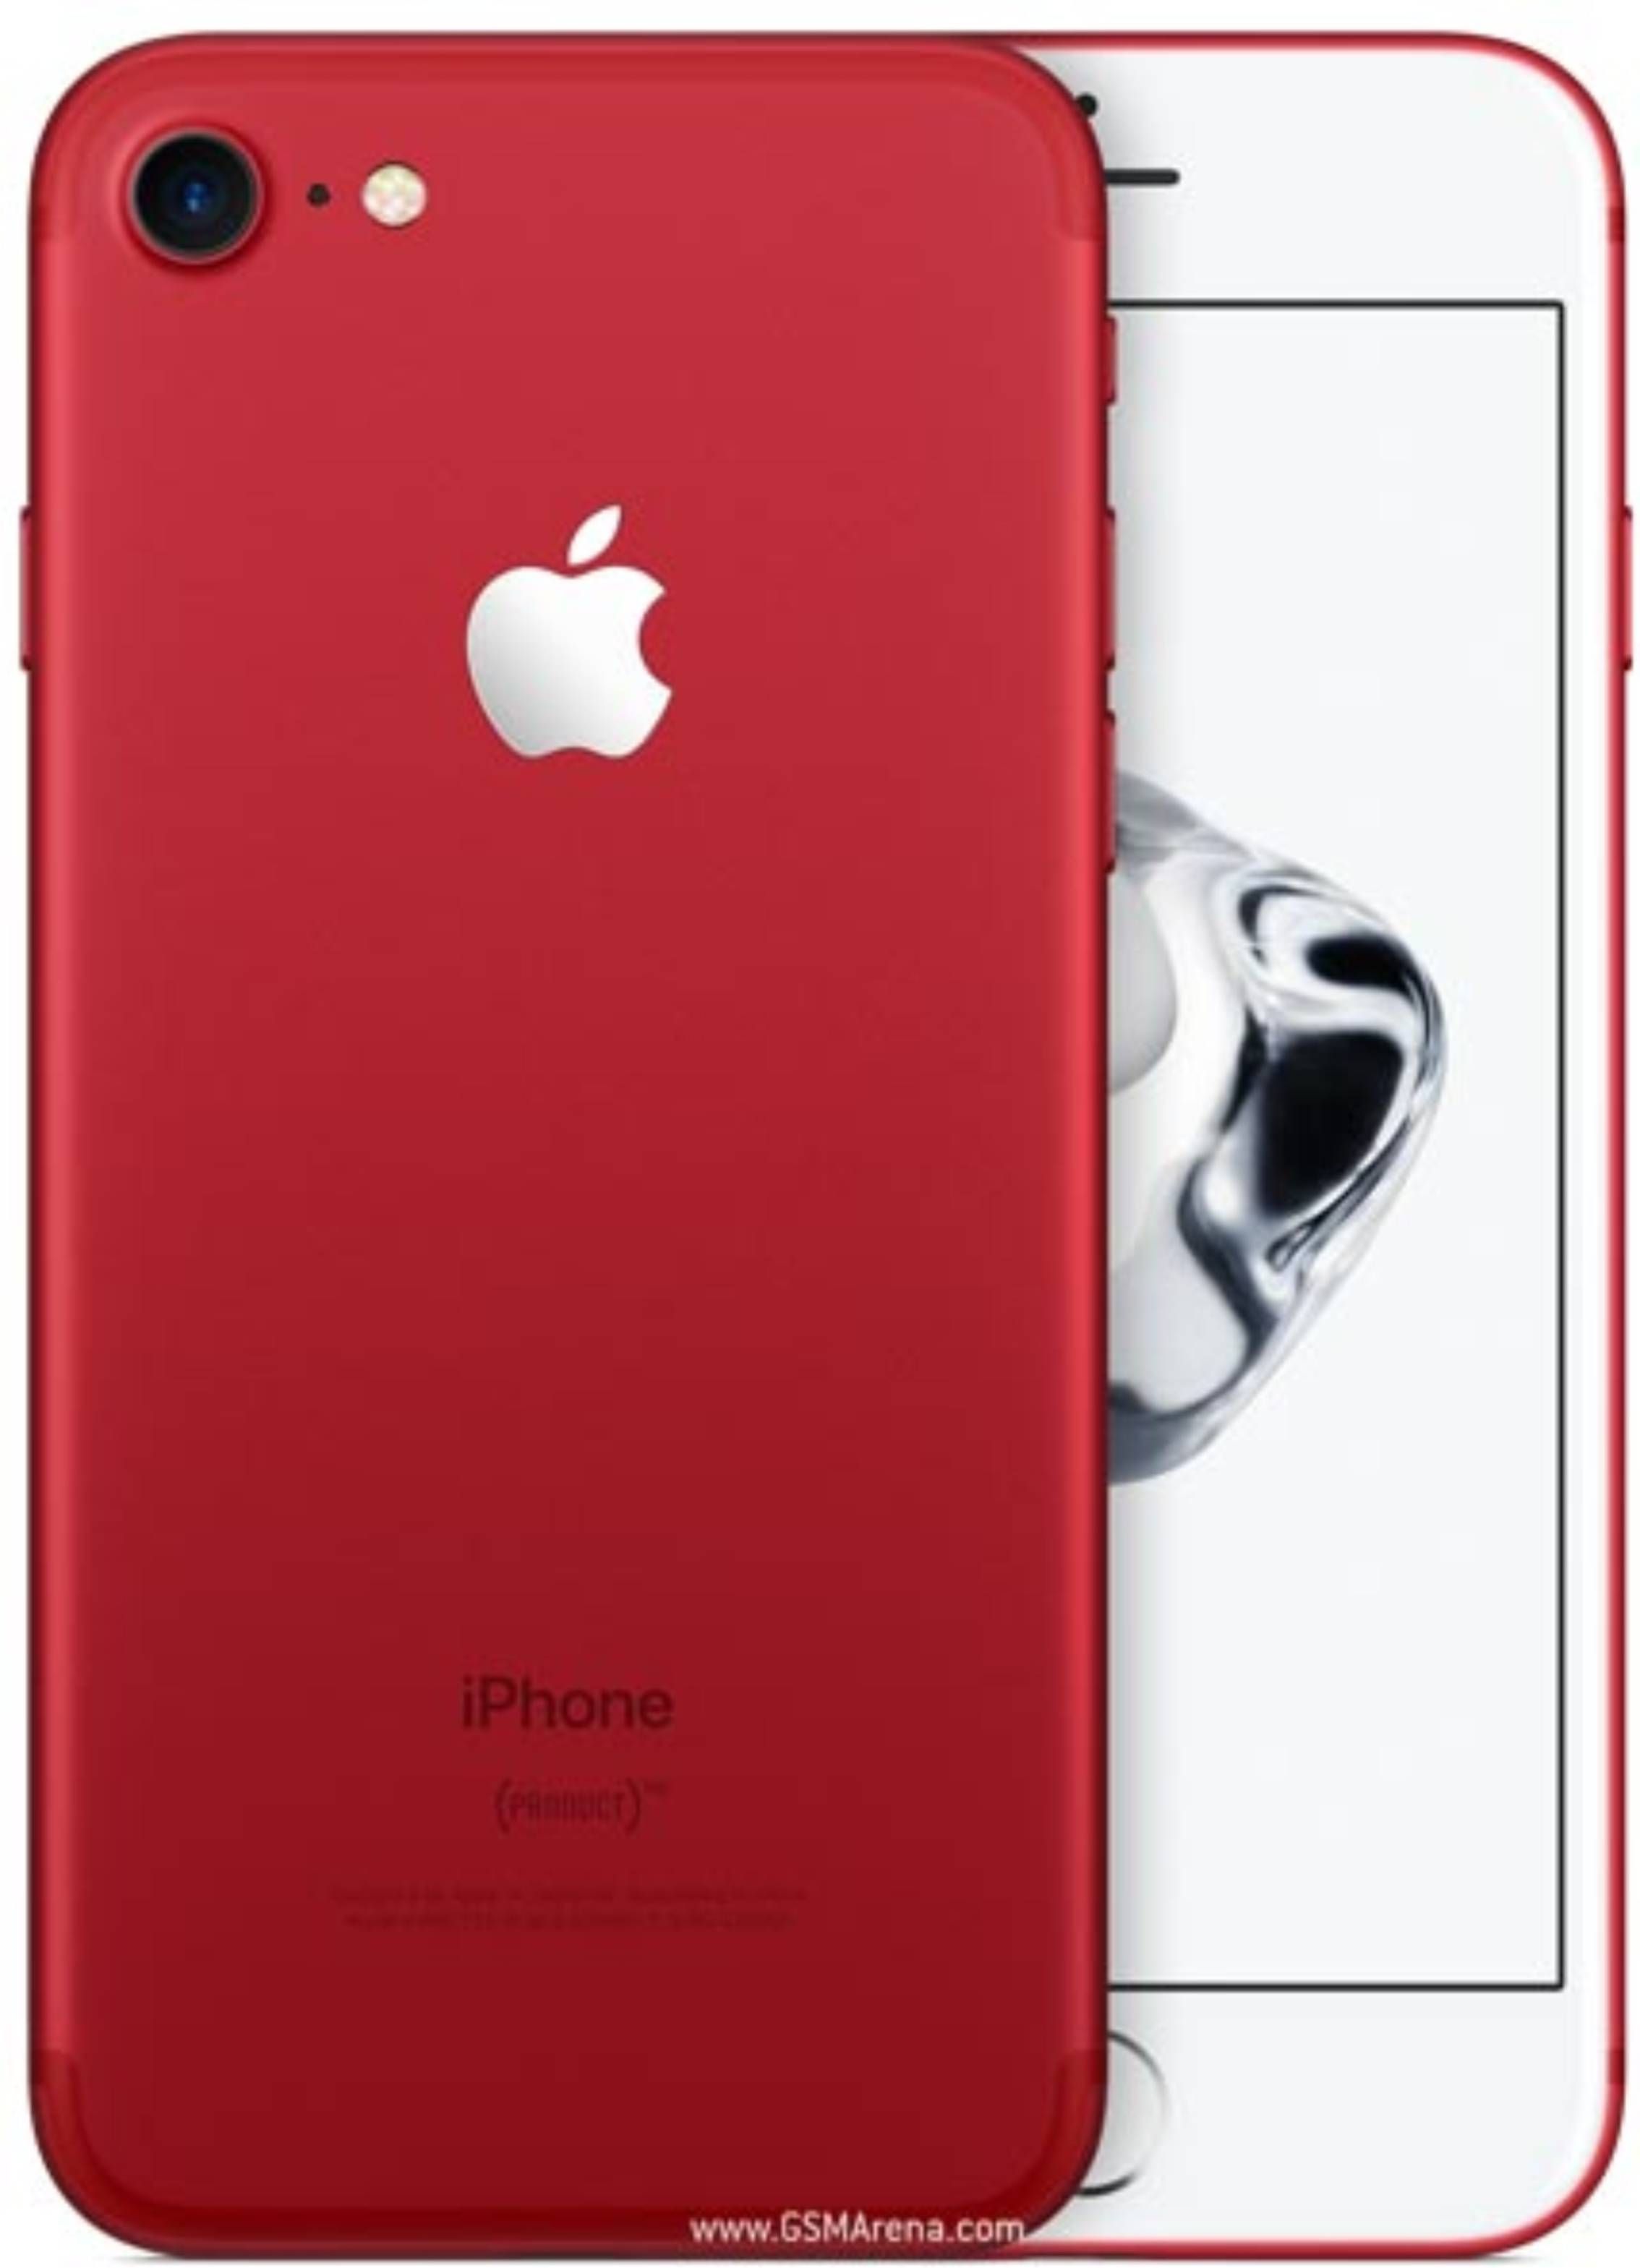 iPhone 7 256GB Price in Eldoret